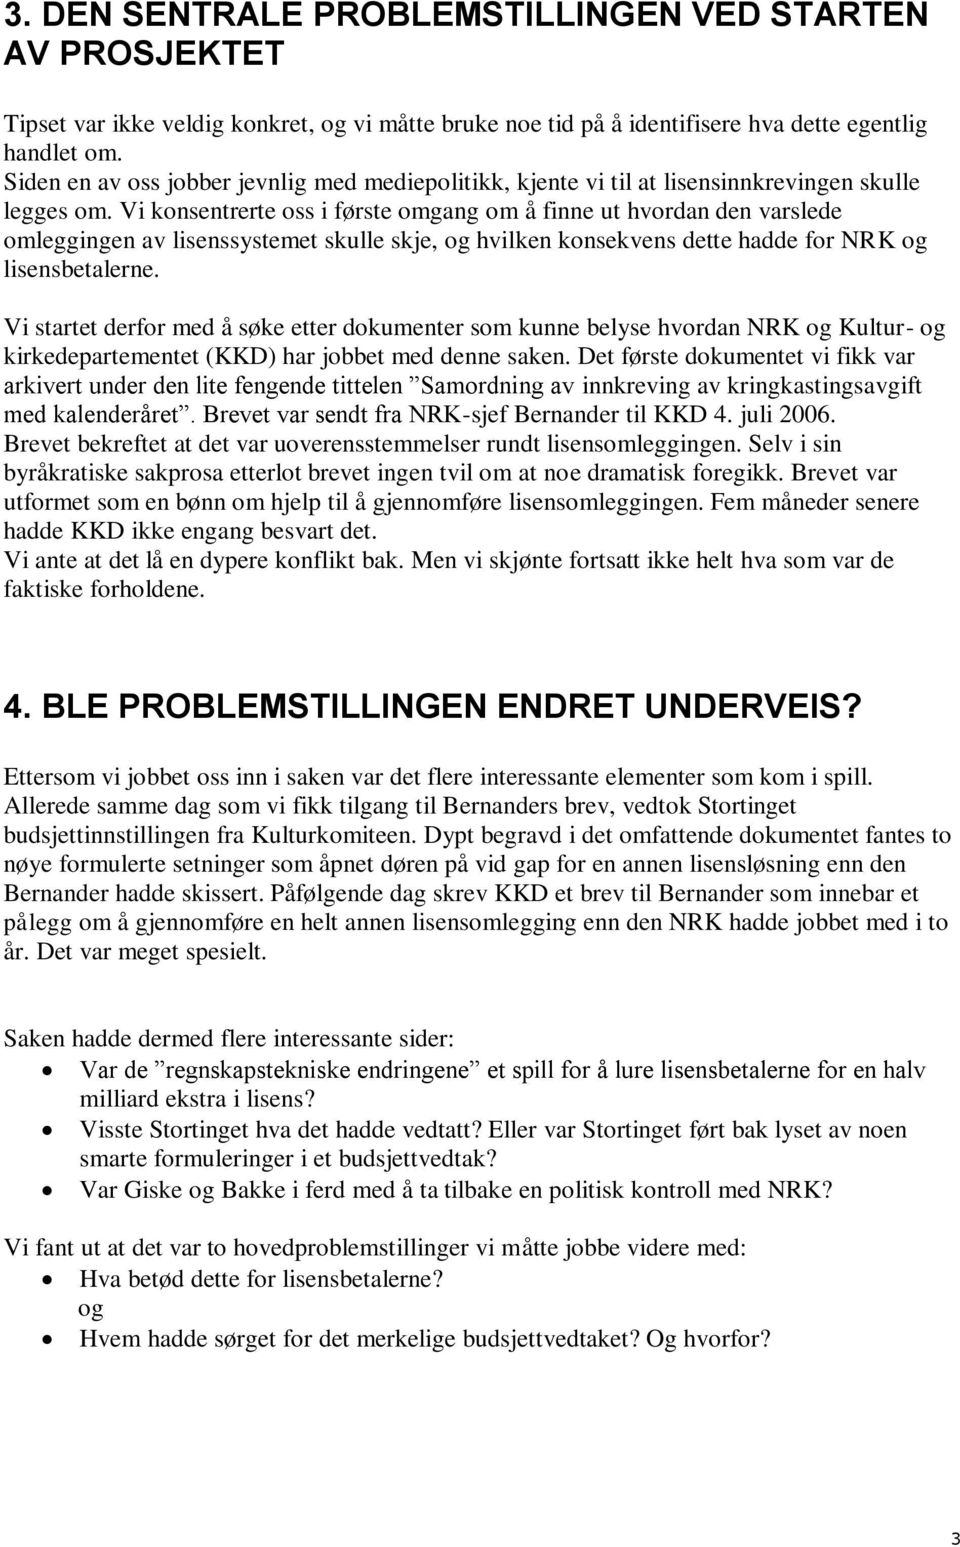 Vi konsentrerte oss i første omgang om å finne ut hvordan den varslede omleggingen av lisenssystemet skulle skje, og hvilken konsekvens dette hadde for NRK og lisensbetalerne.